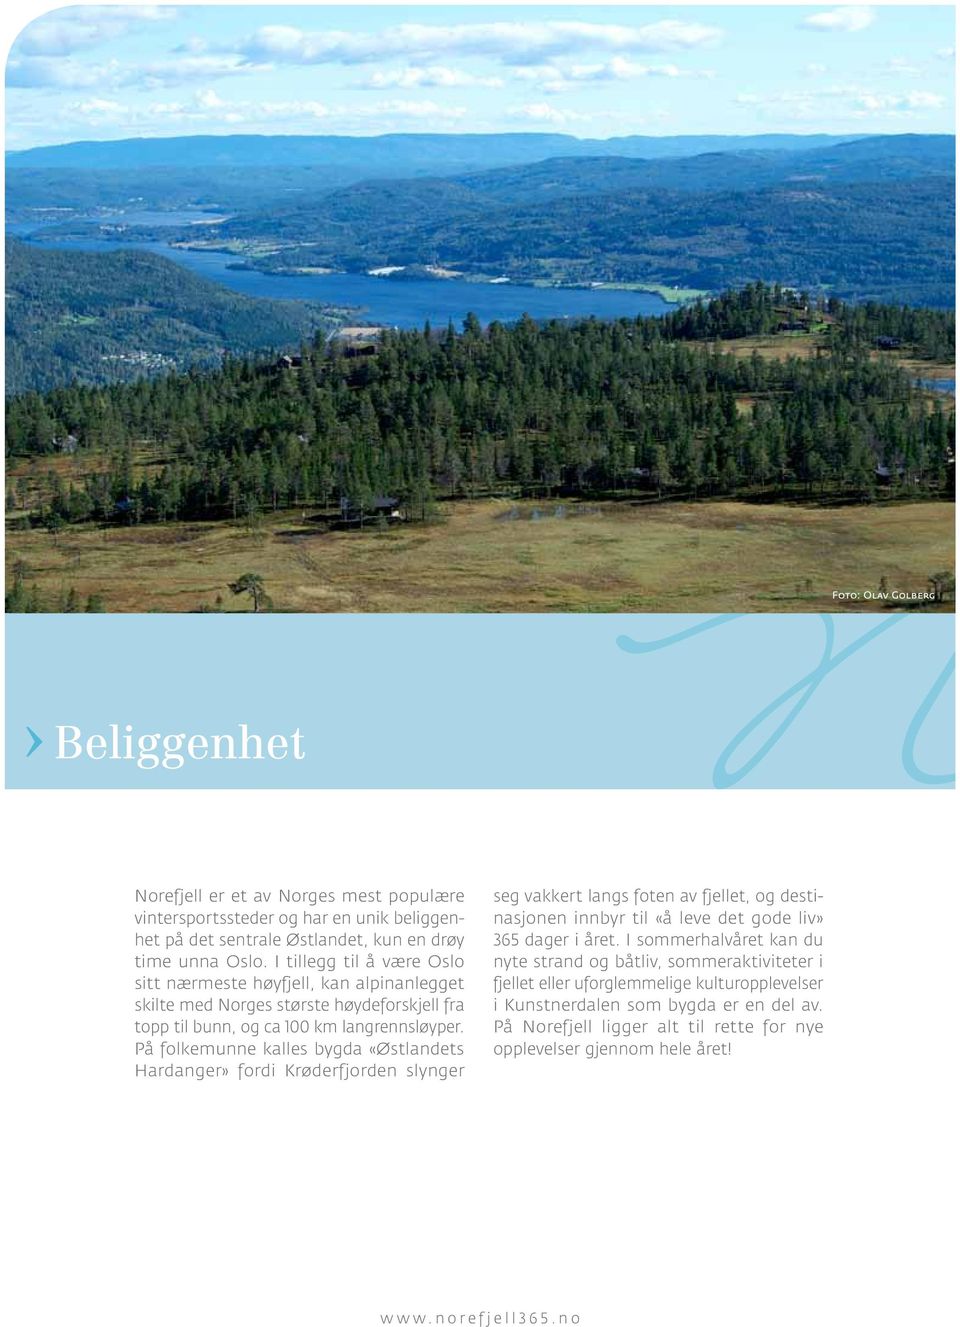 På folkemunne kalles bygda «Østlandets Hardanger» fordi Krøderfjorden slynger seg vakkert langs foten av fjellet, og destinasjonen innbyr til «å leve det gode liv» 365 dager i året.